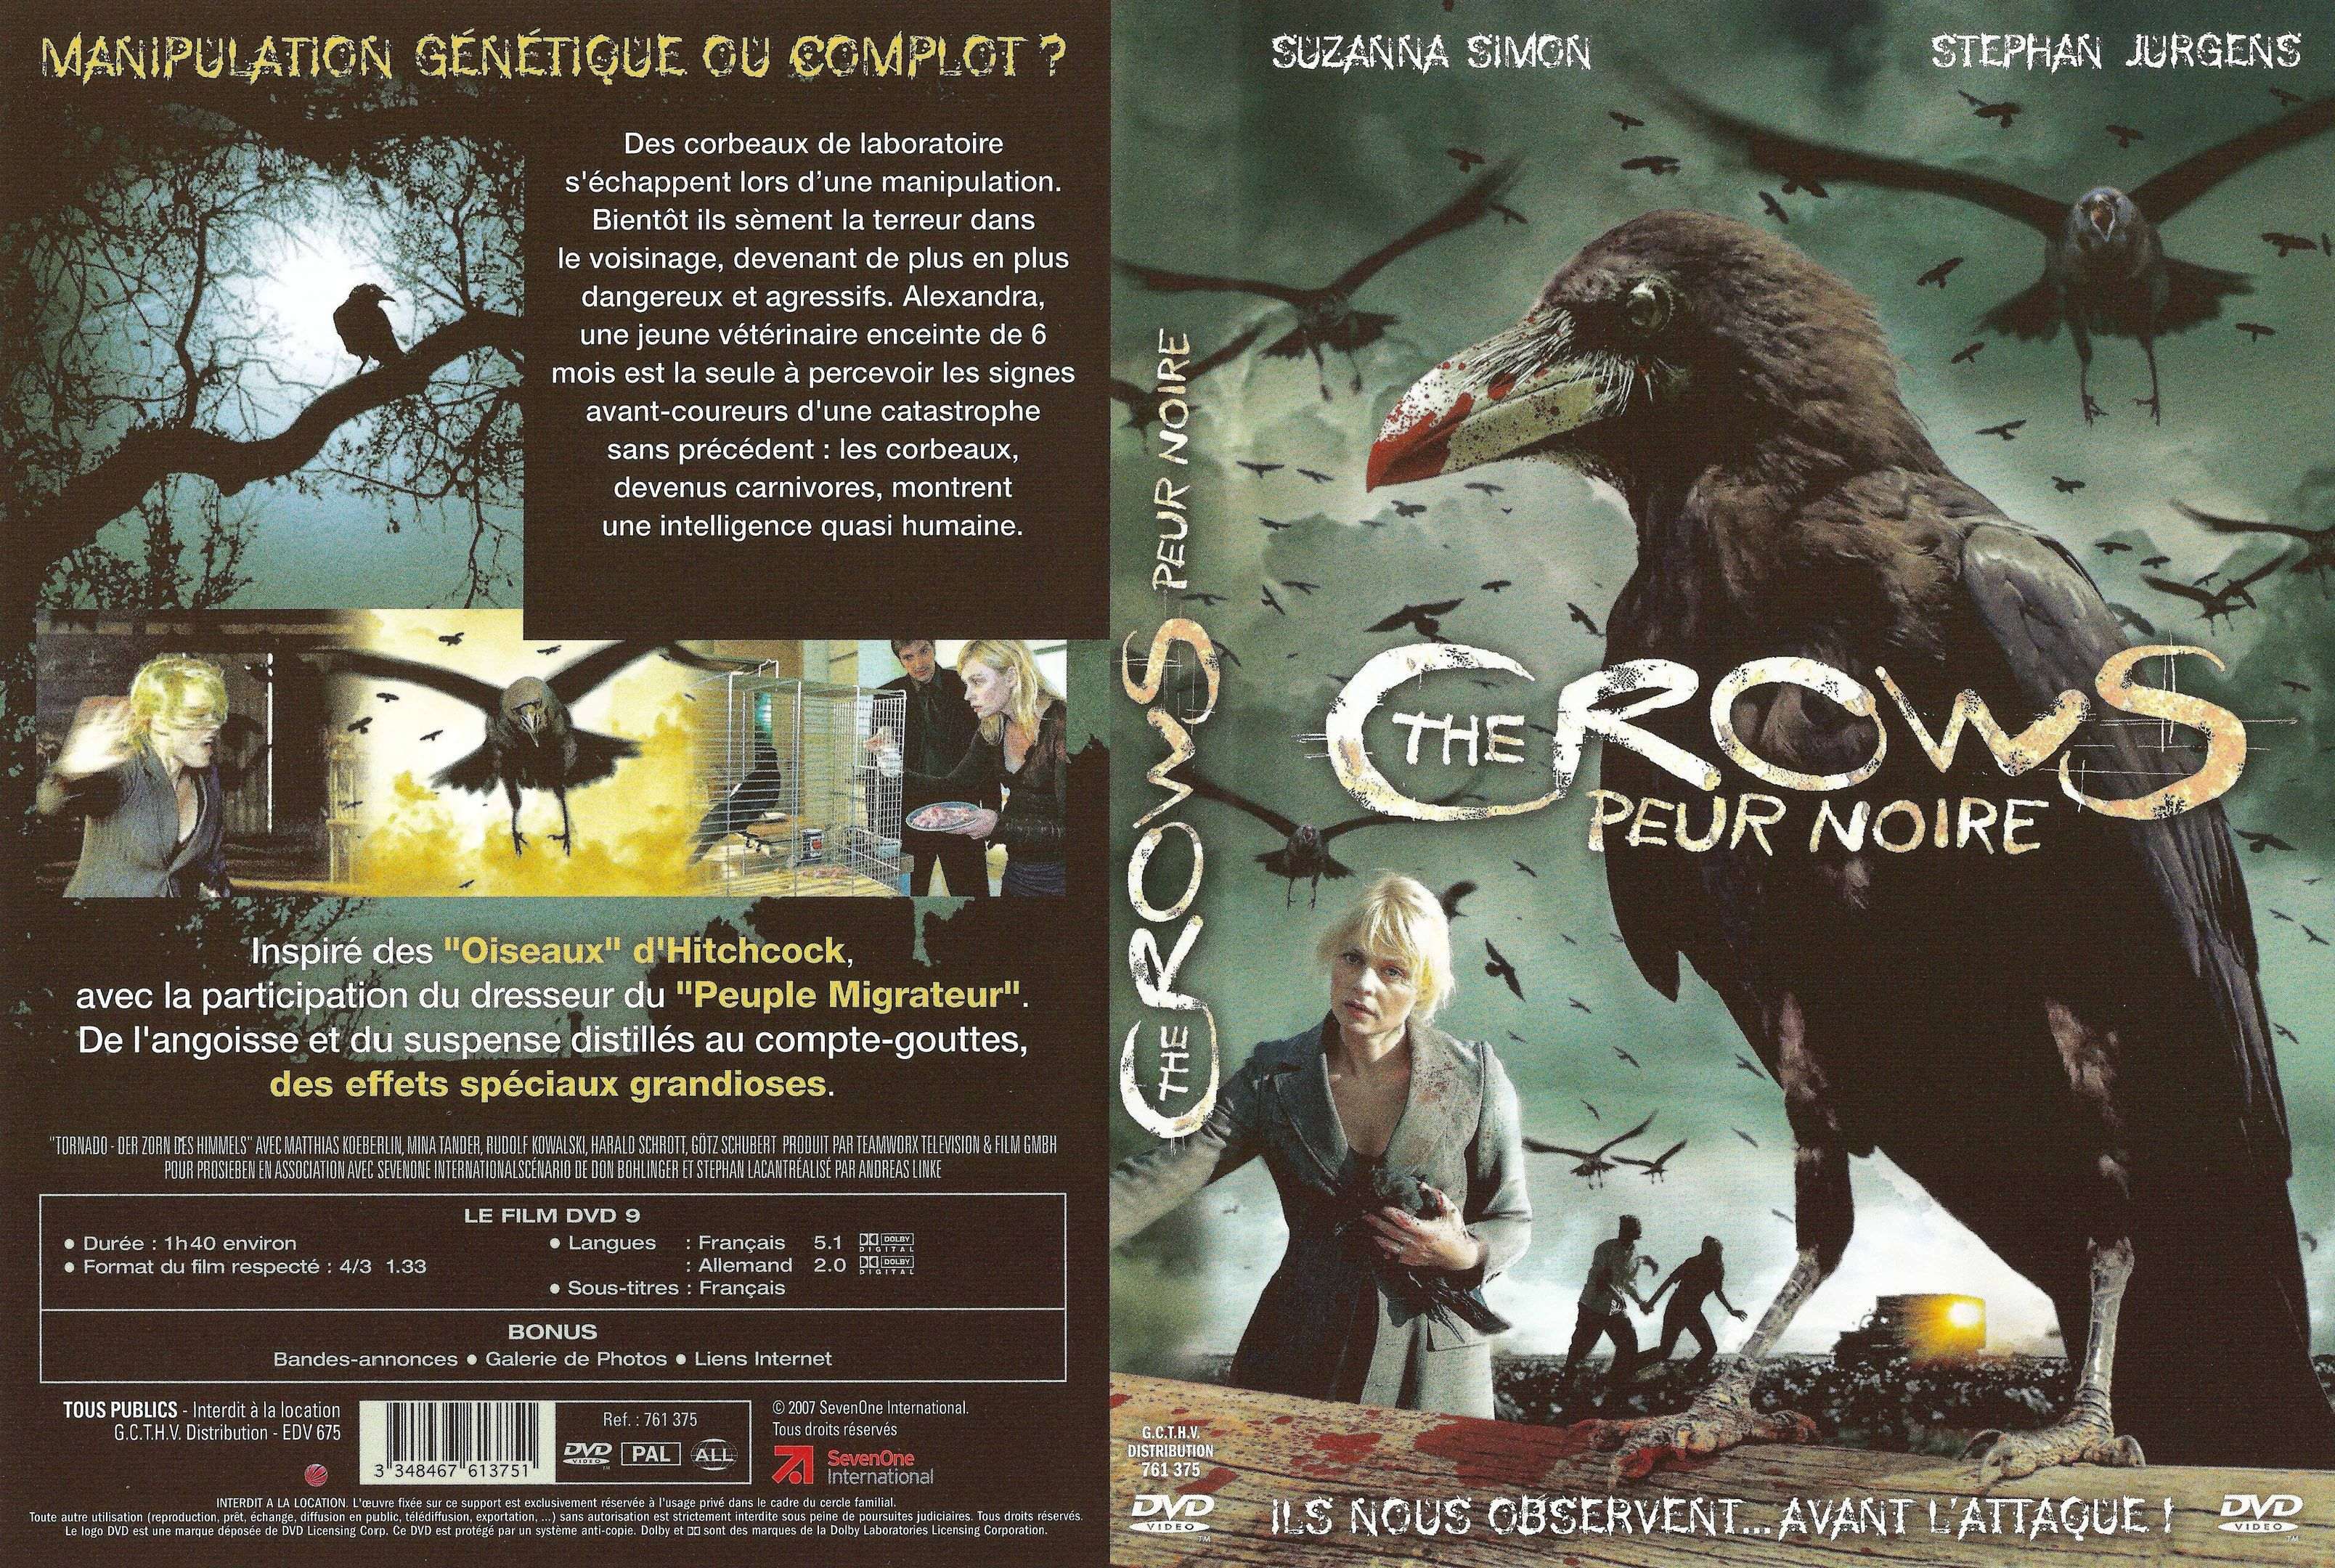 Jaquette DVD The crows peur noire